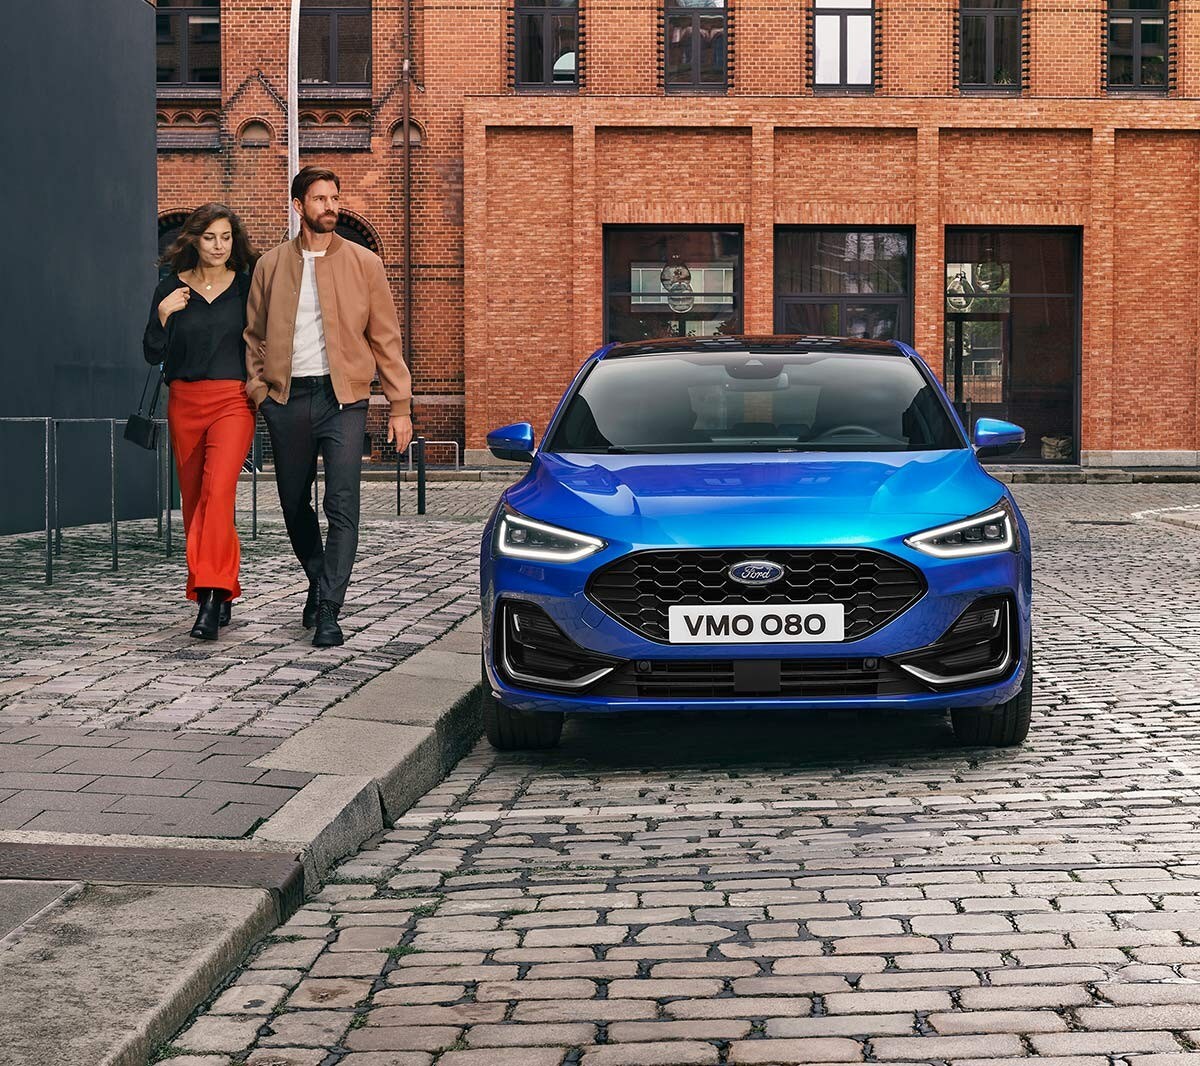 Ford Focus couleur bleue. Vue de face, se garant dans une zone industrielle. Deux personnes passent à côté.